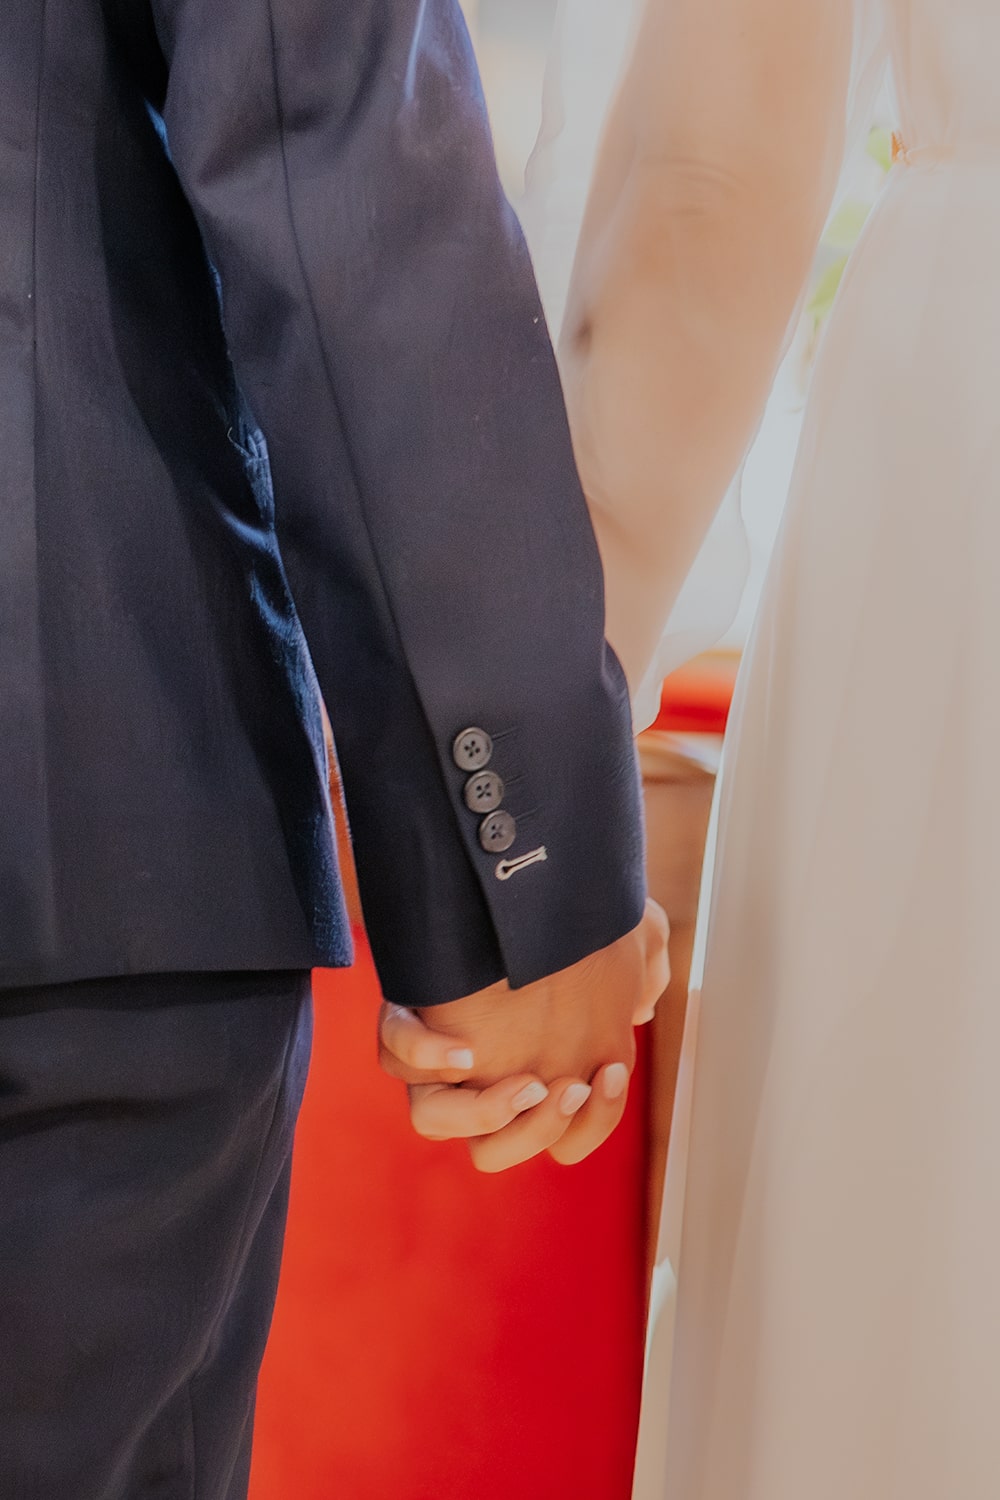 Détail des mariés dans l'église qui se tiennent main dans la main - Photographie mariage pau